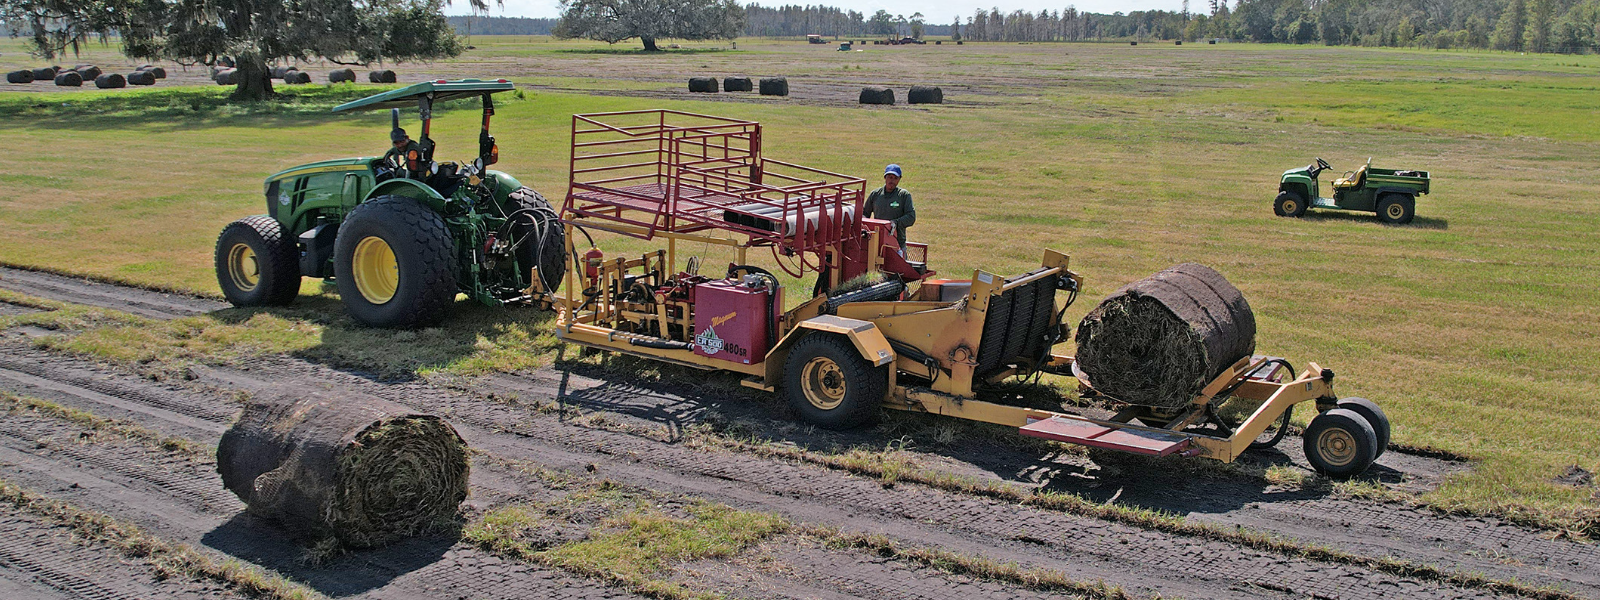 tractor farming sod